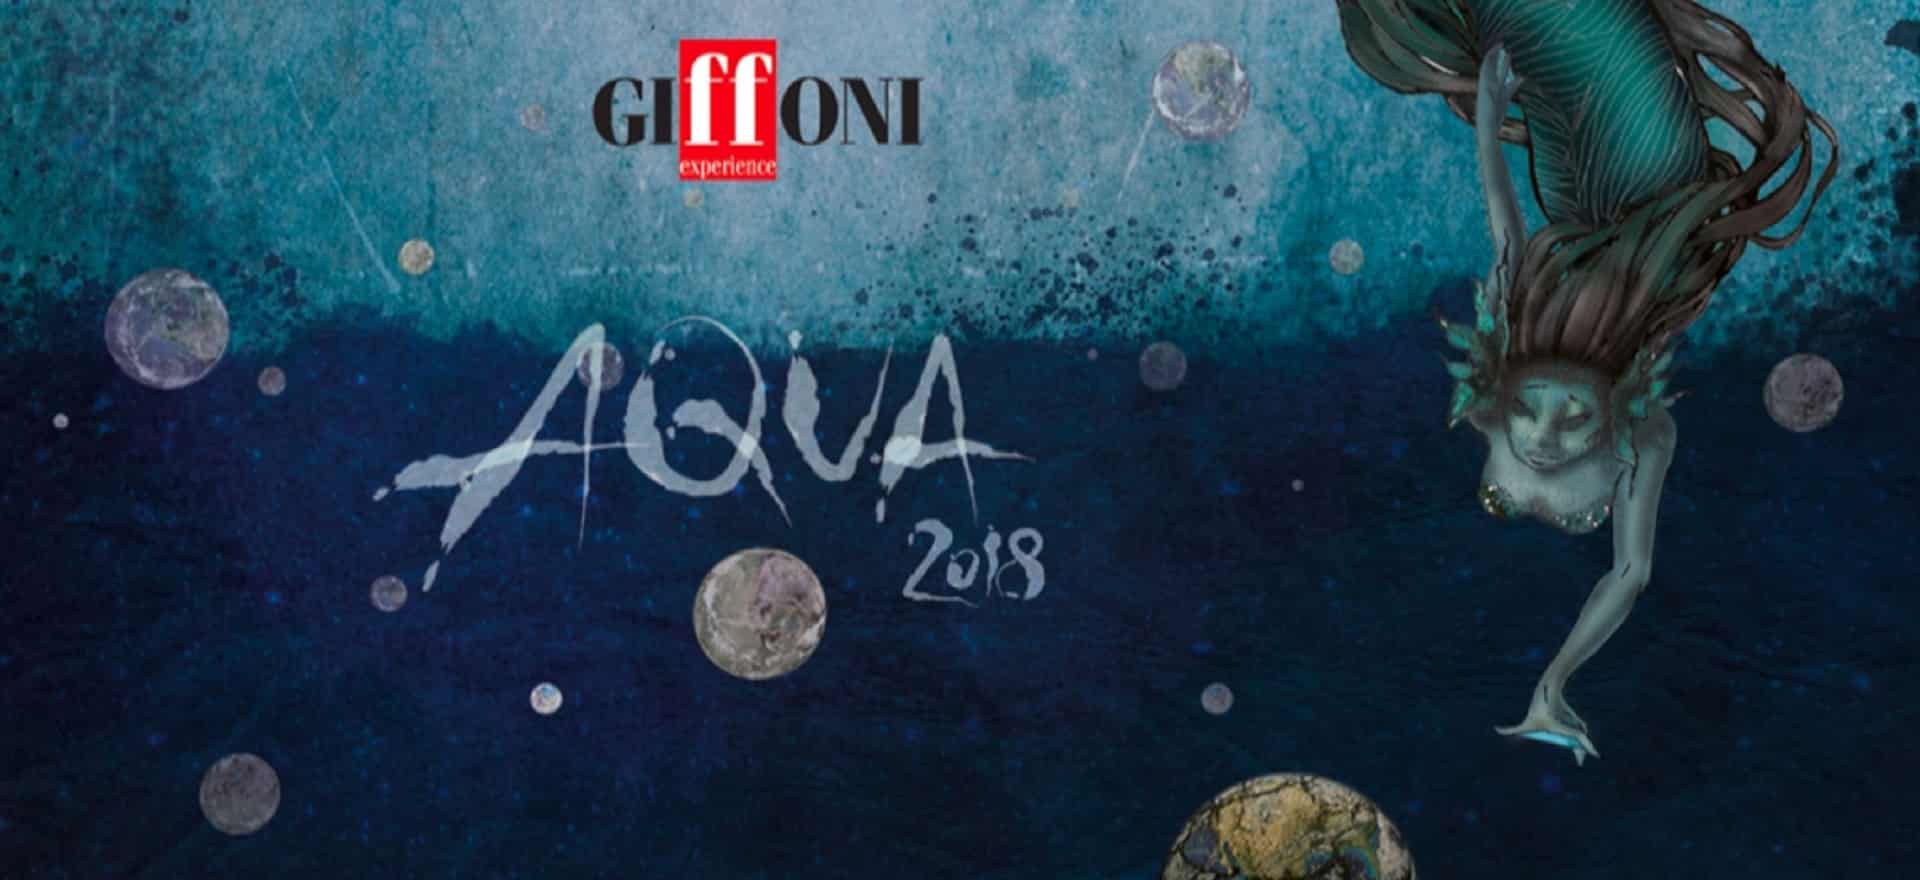 Giffoni 2018 – Aqua Movies 4K: la rassegna serale in sala Atmos in UHD